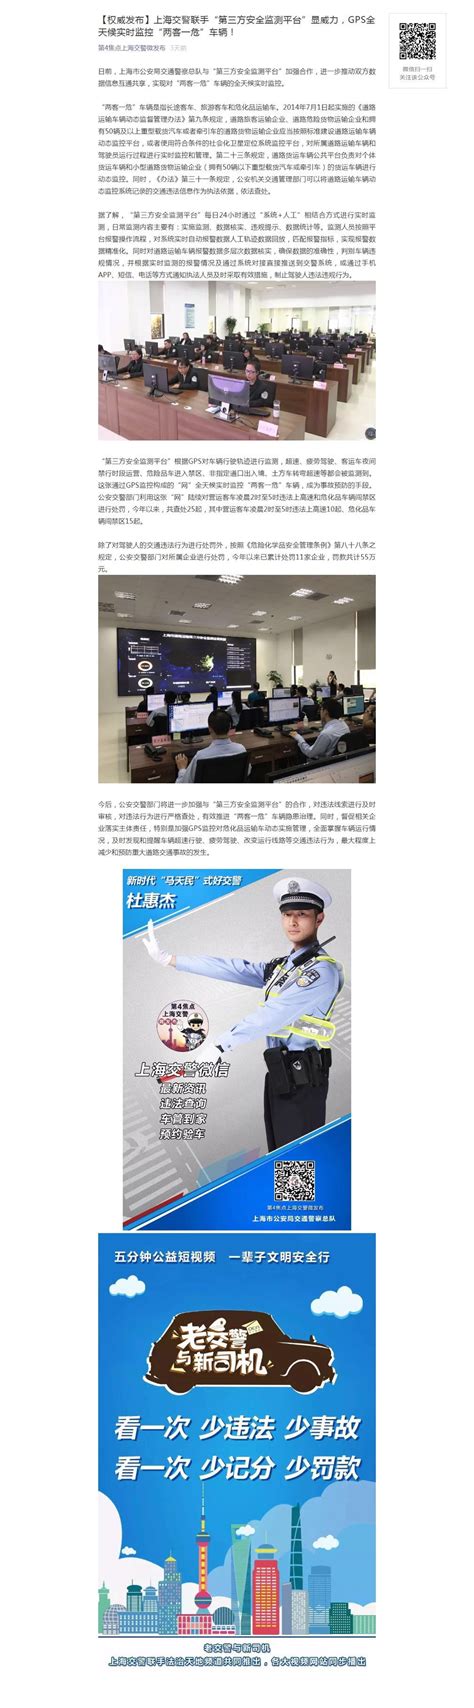 上海市公安局交通警察总队官方微信报道第三方安全监测平台为 “两客一危”车辆隐患治理助力 – 上海联茵